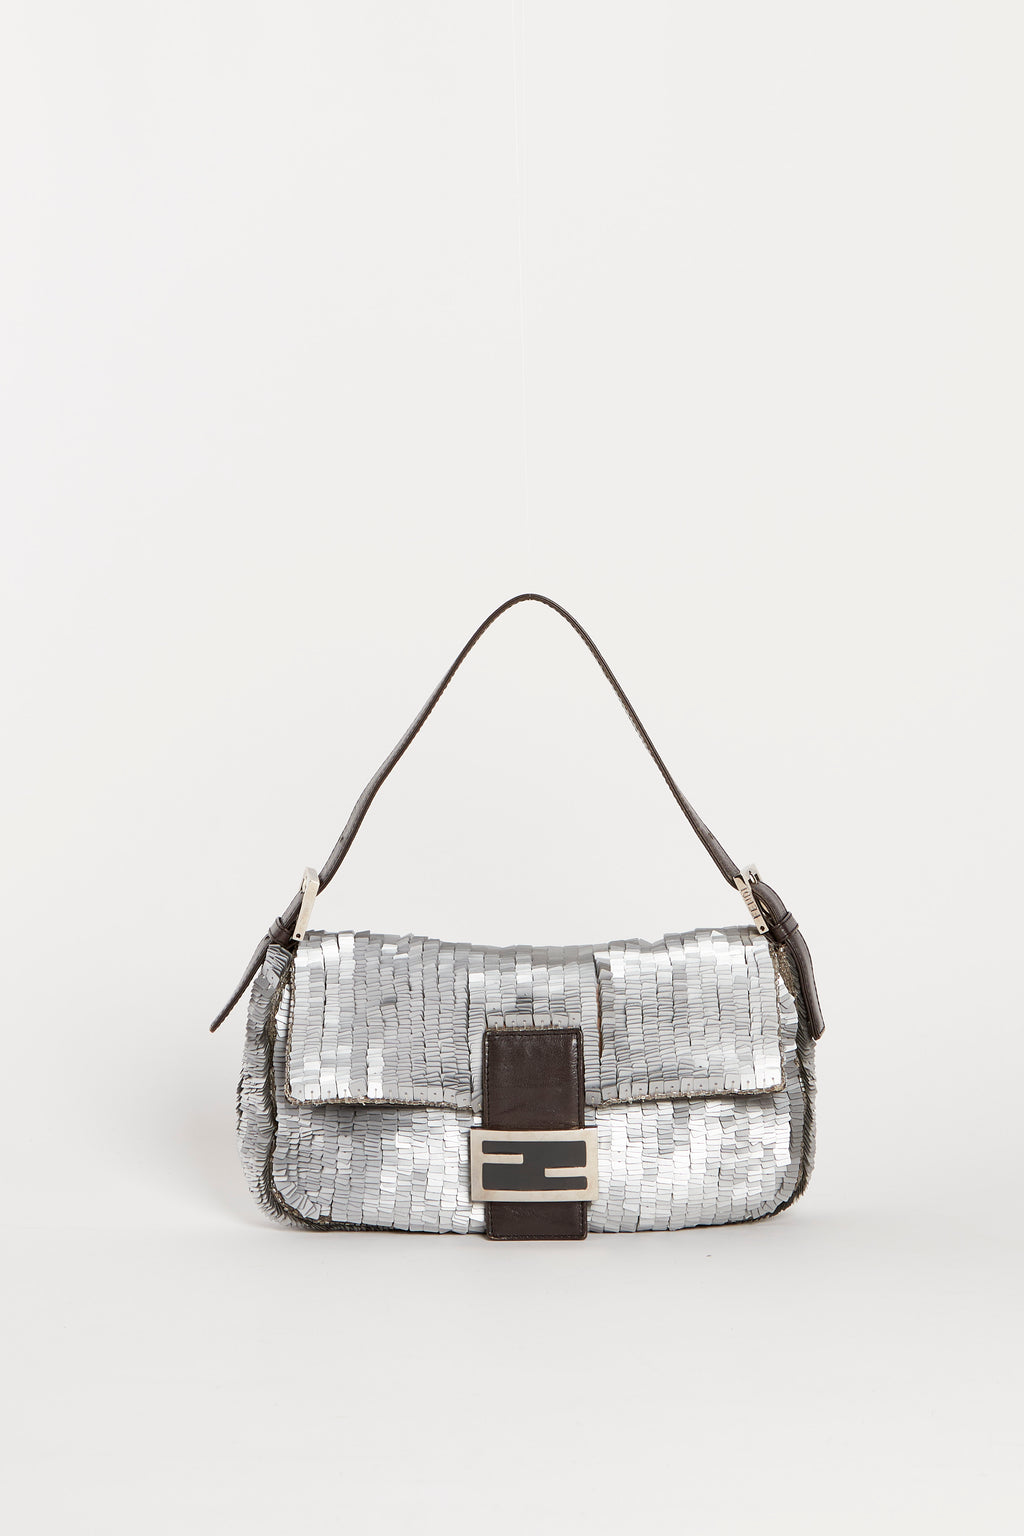 Vintage Fendi Silver Sequin Baguette Shoulder Bag